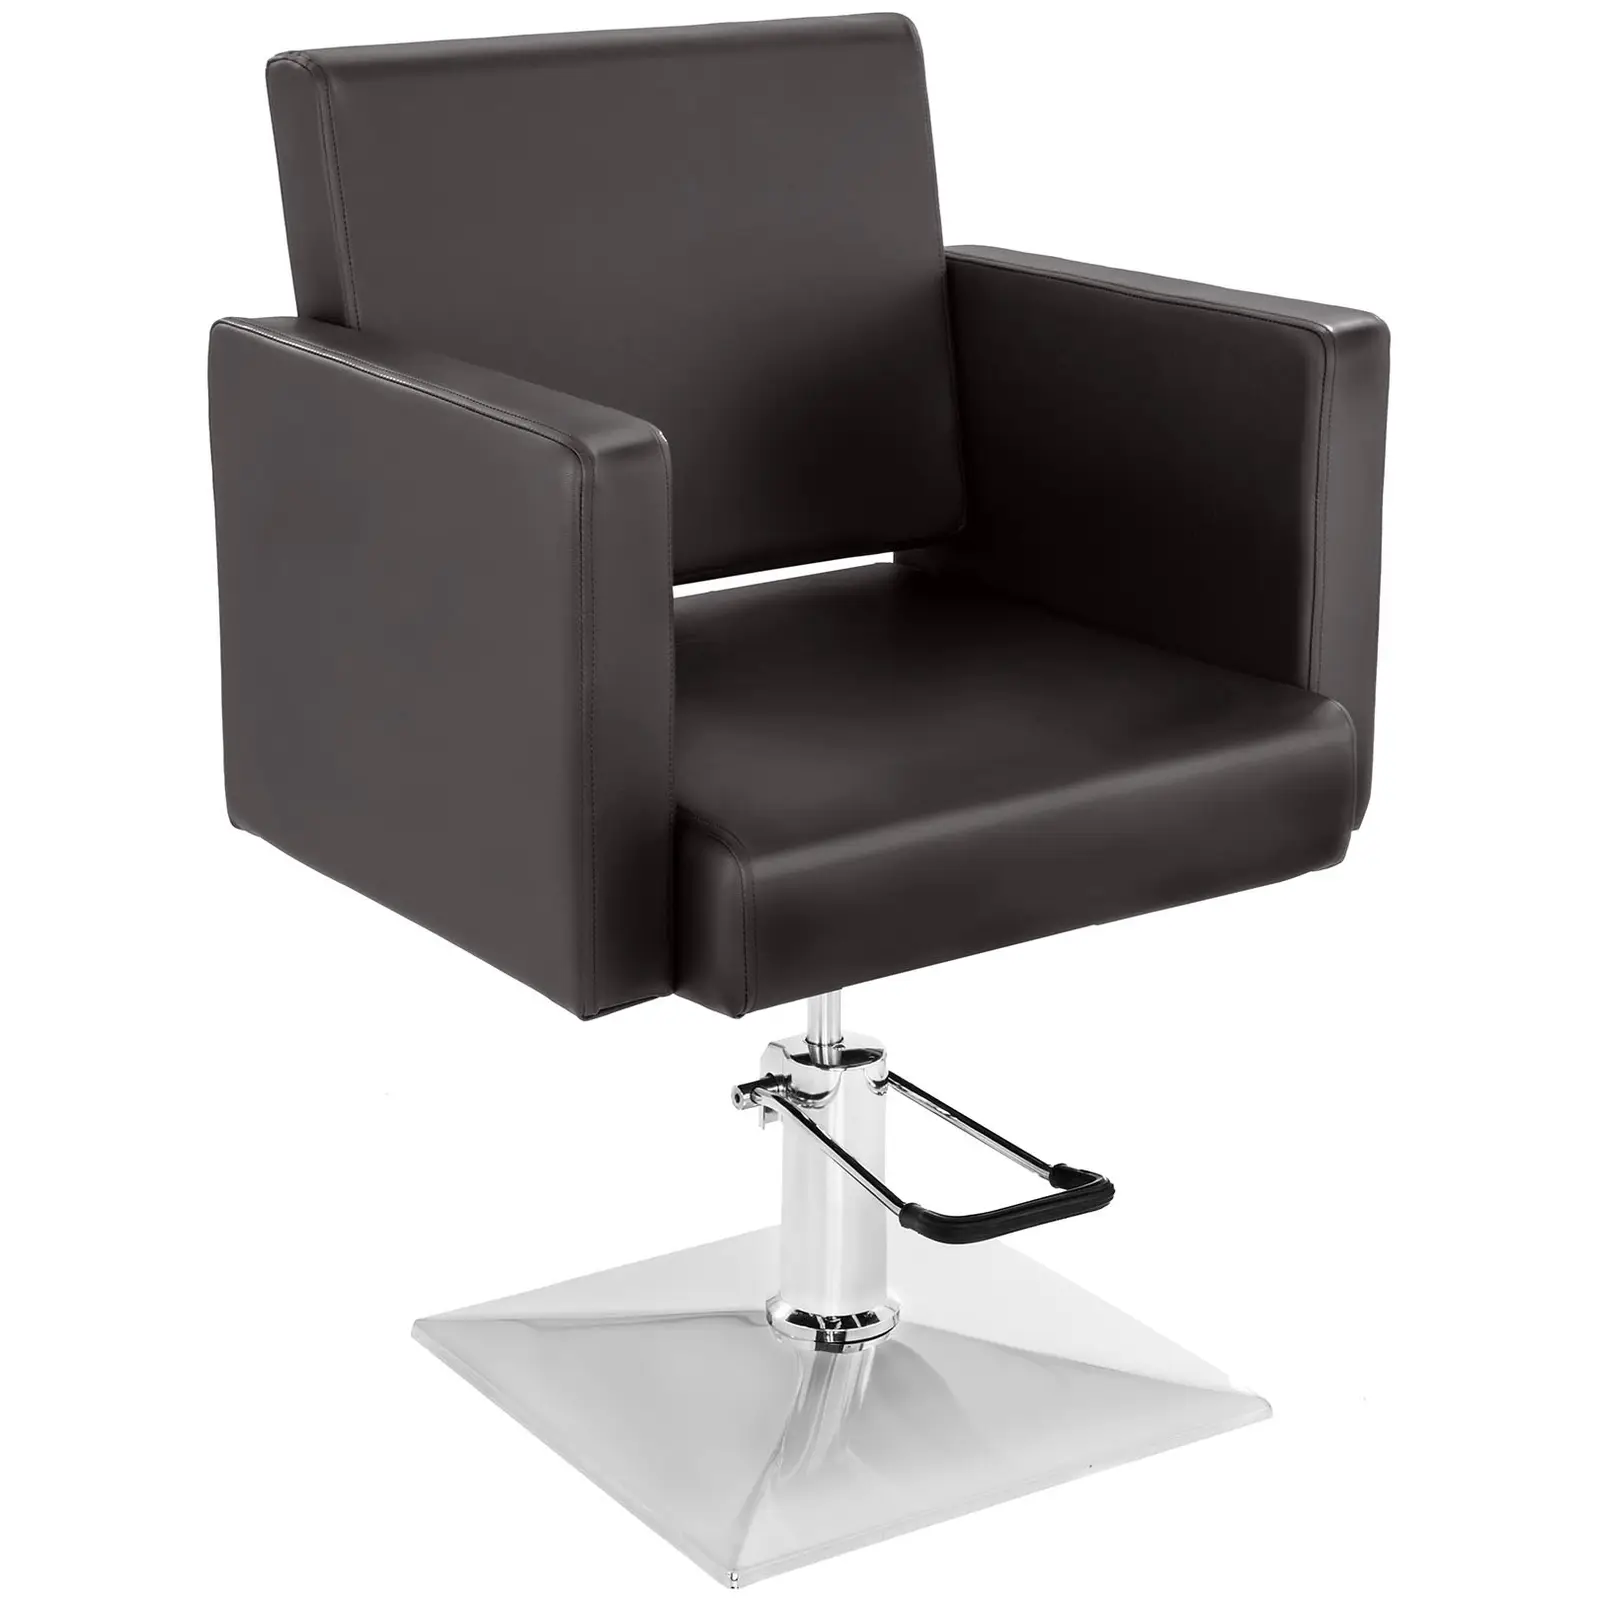 Fodrász szék - mm - 200 kg - Barna | physa